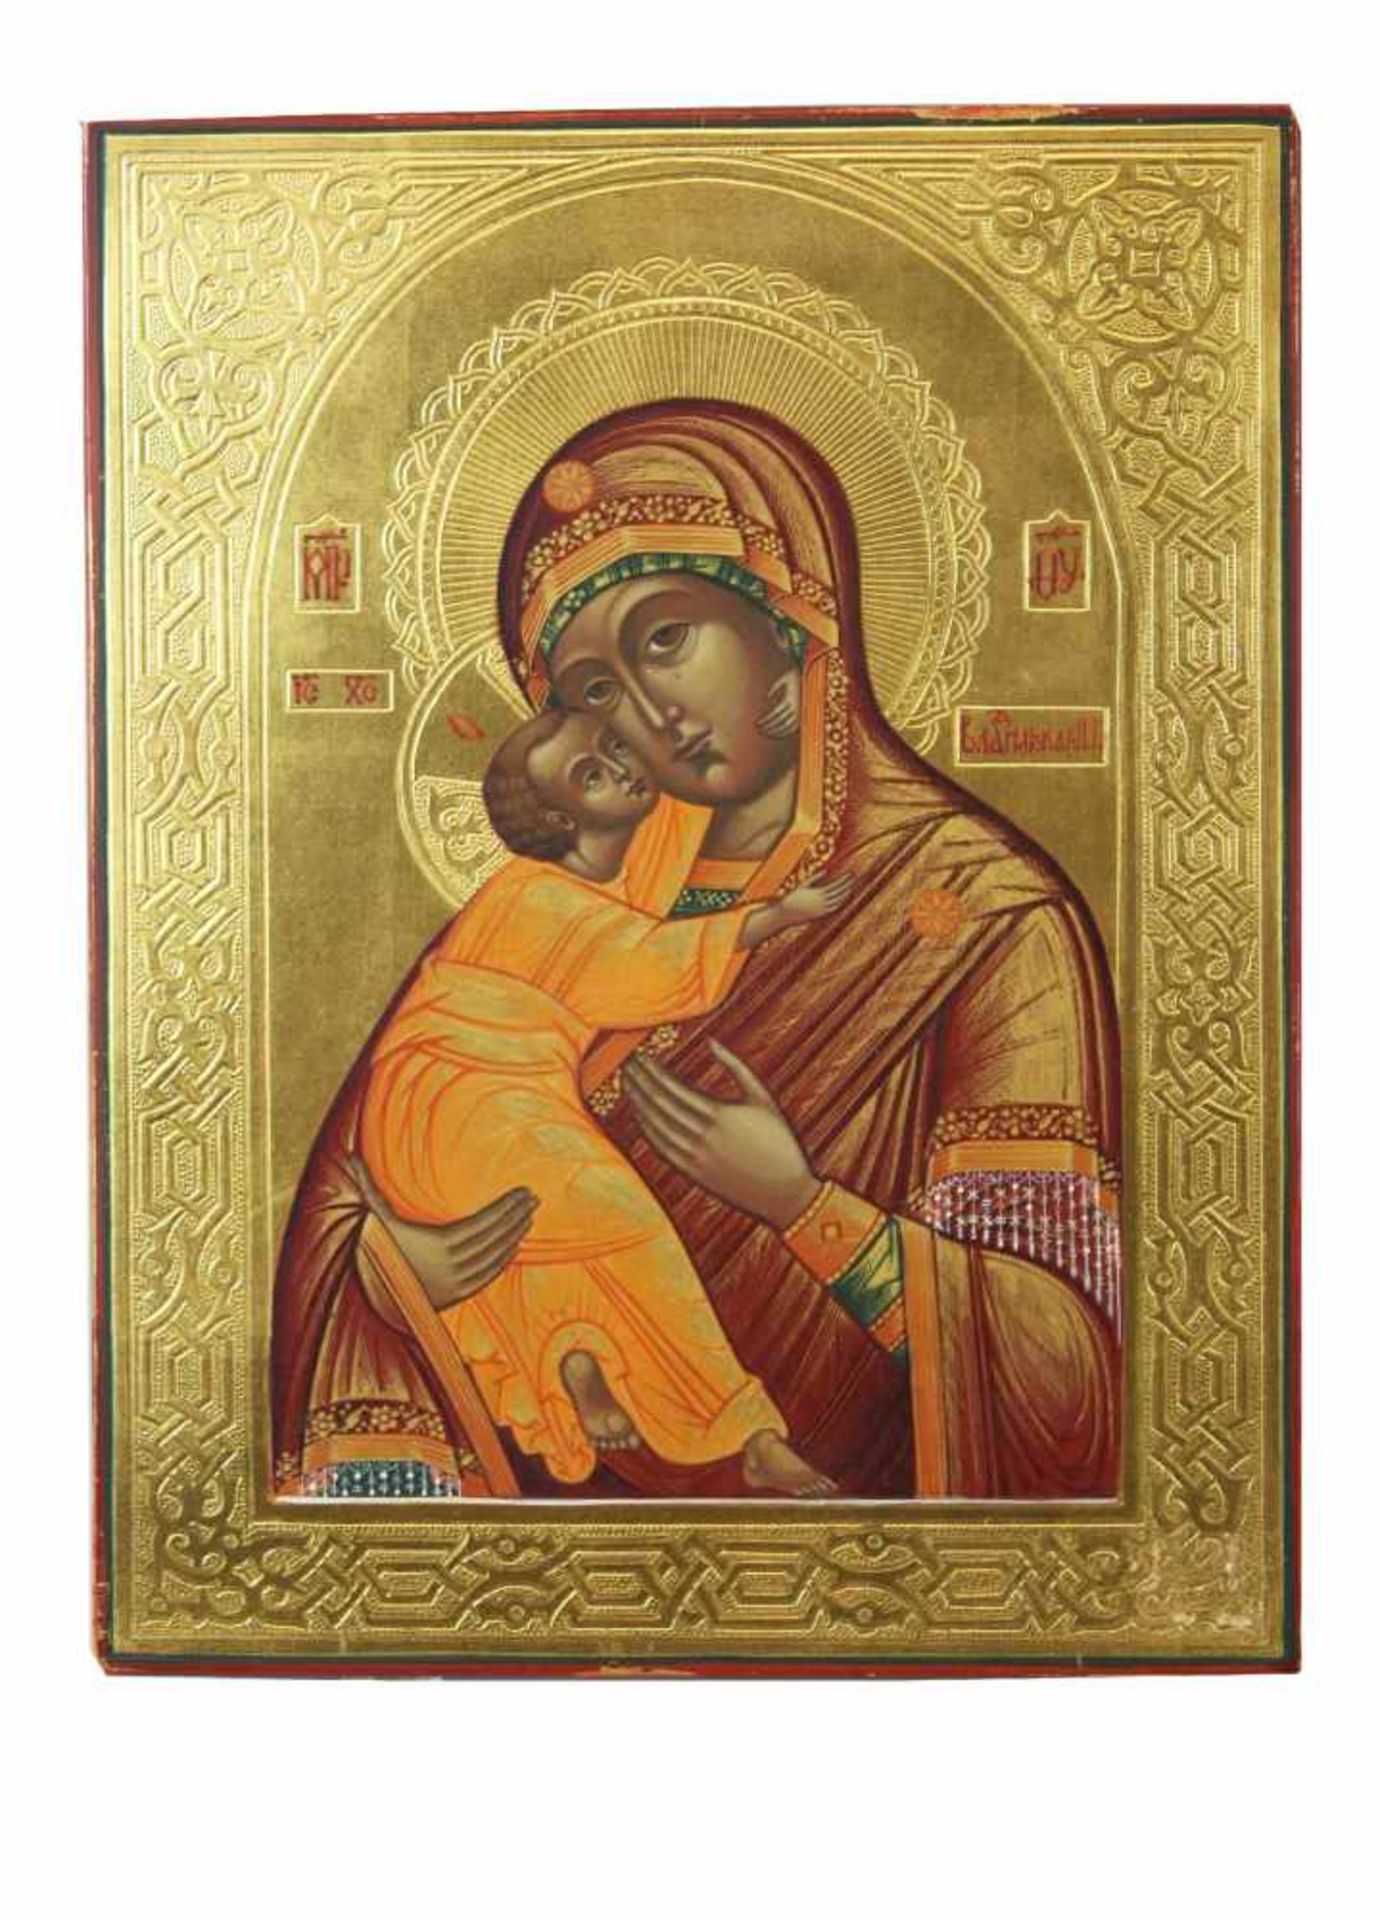 Gottesmutter von Wladimir, kleine Ikone, Russland, Holztafel mit zwei Rückensponki, goldener Fond